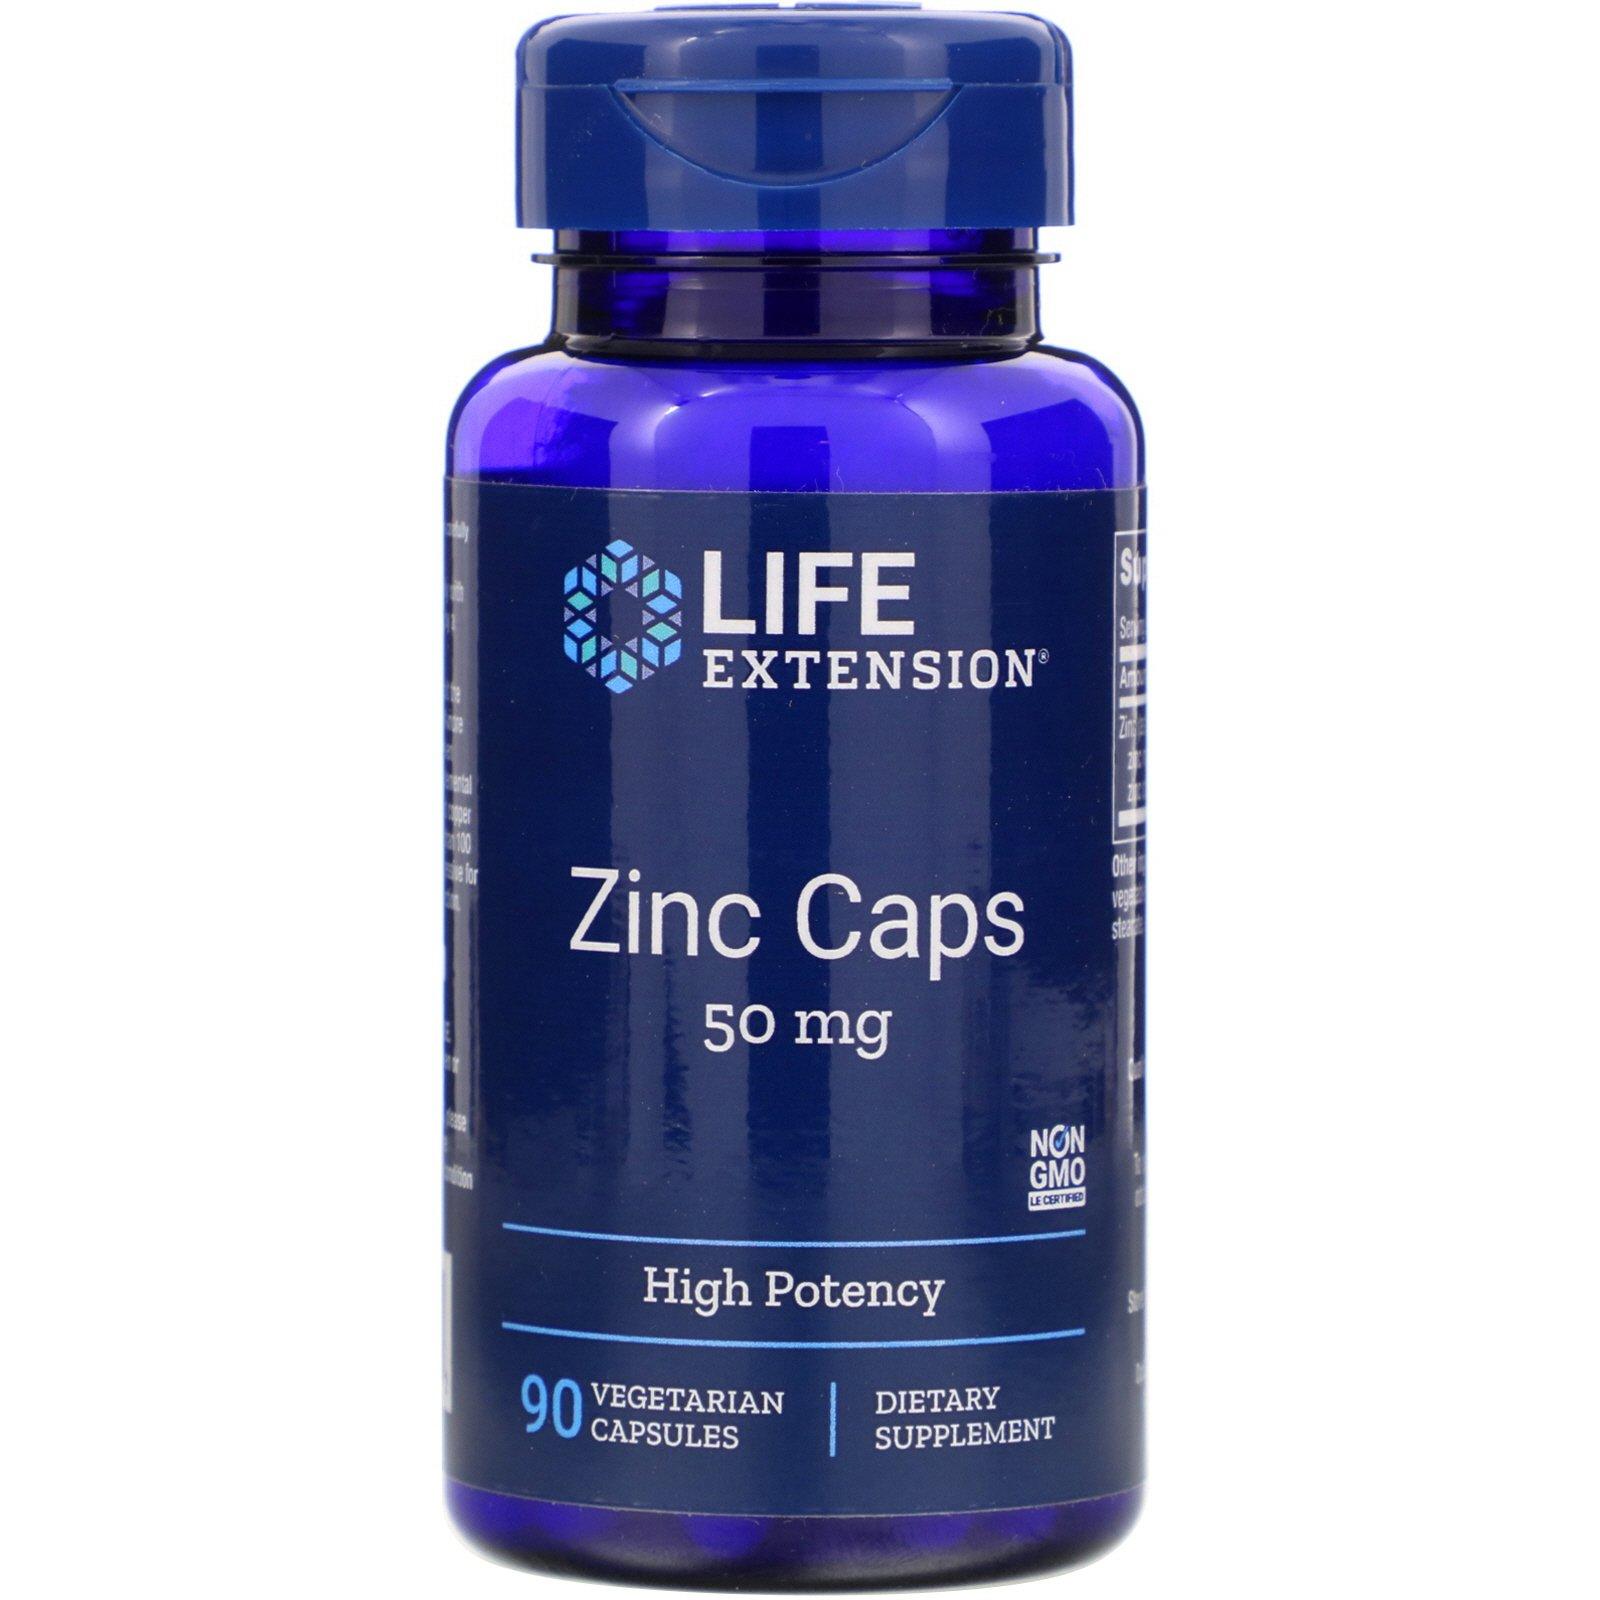 zinc caps 50mg life extension